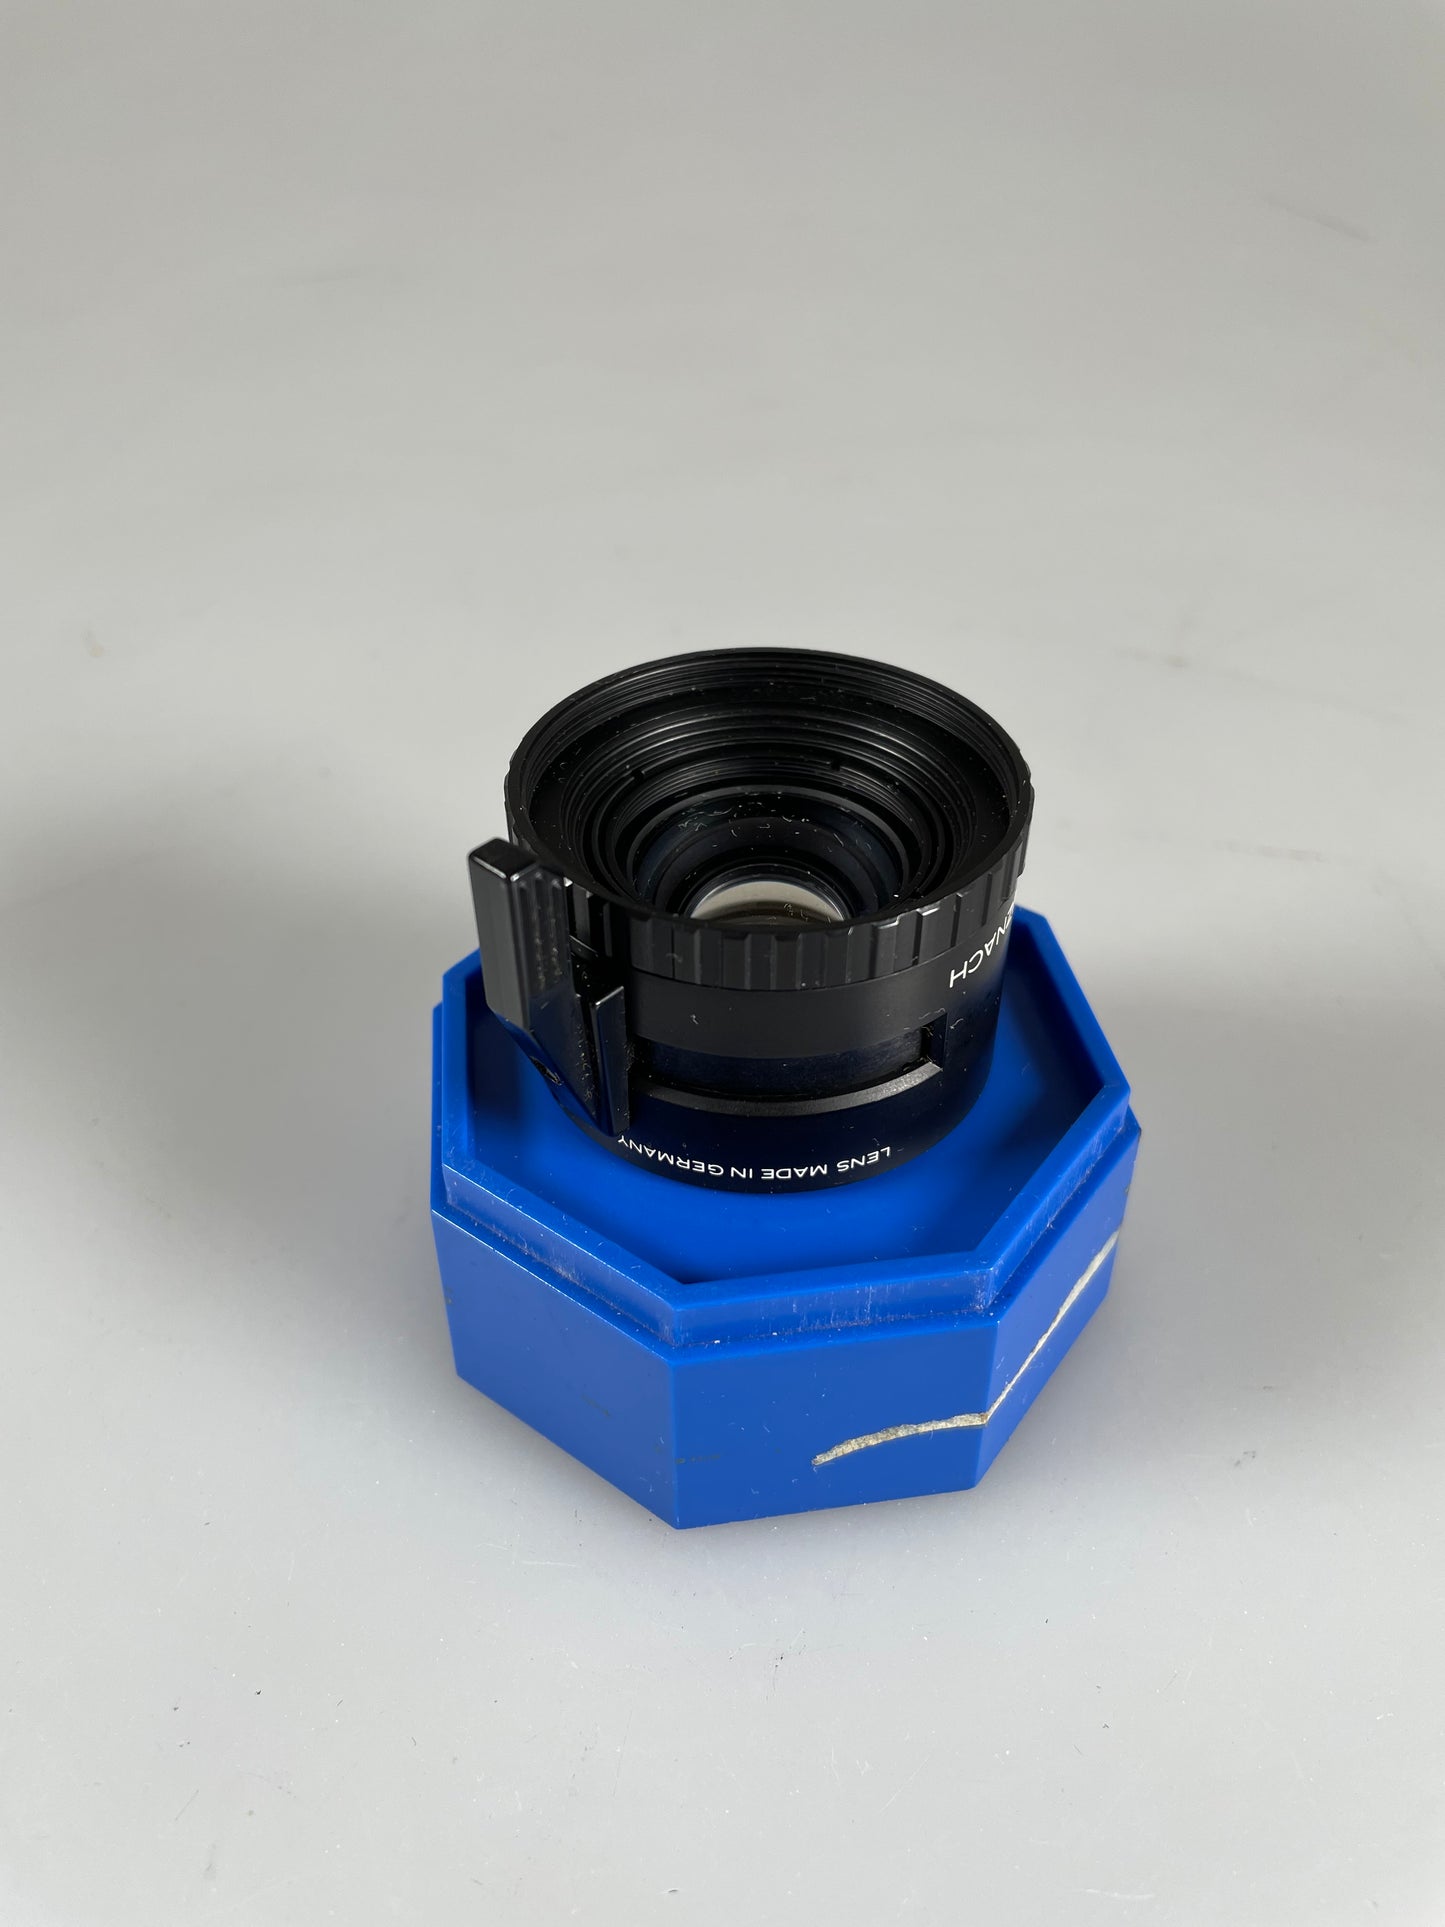 Schneider Componon-S 80mm f4 Enlarger Lens enlarging